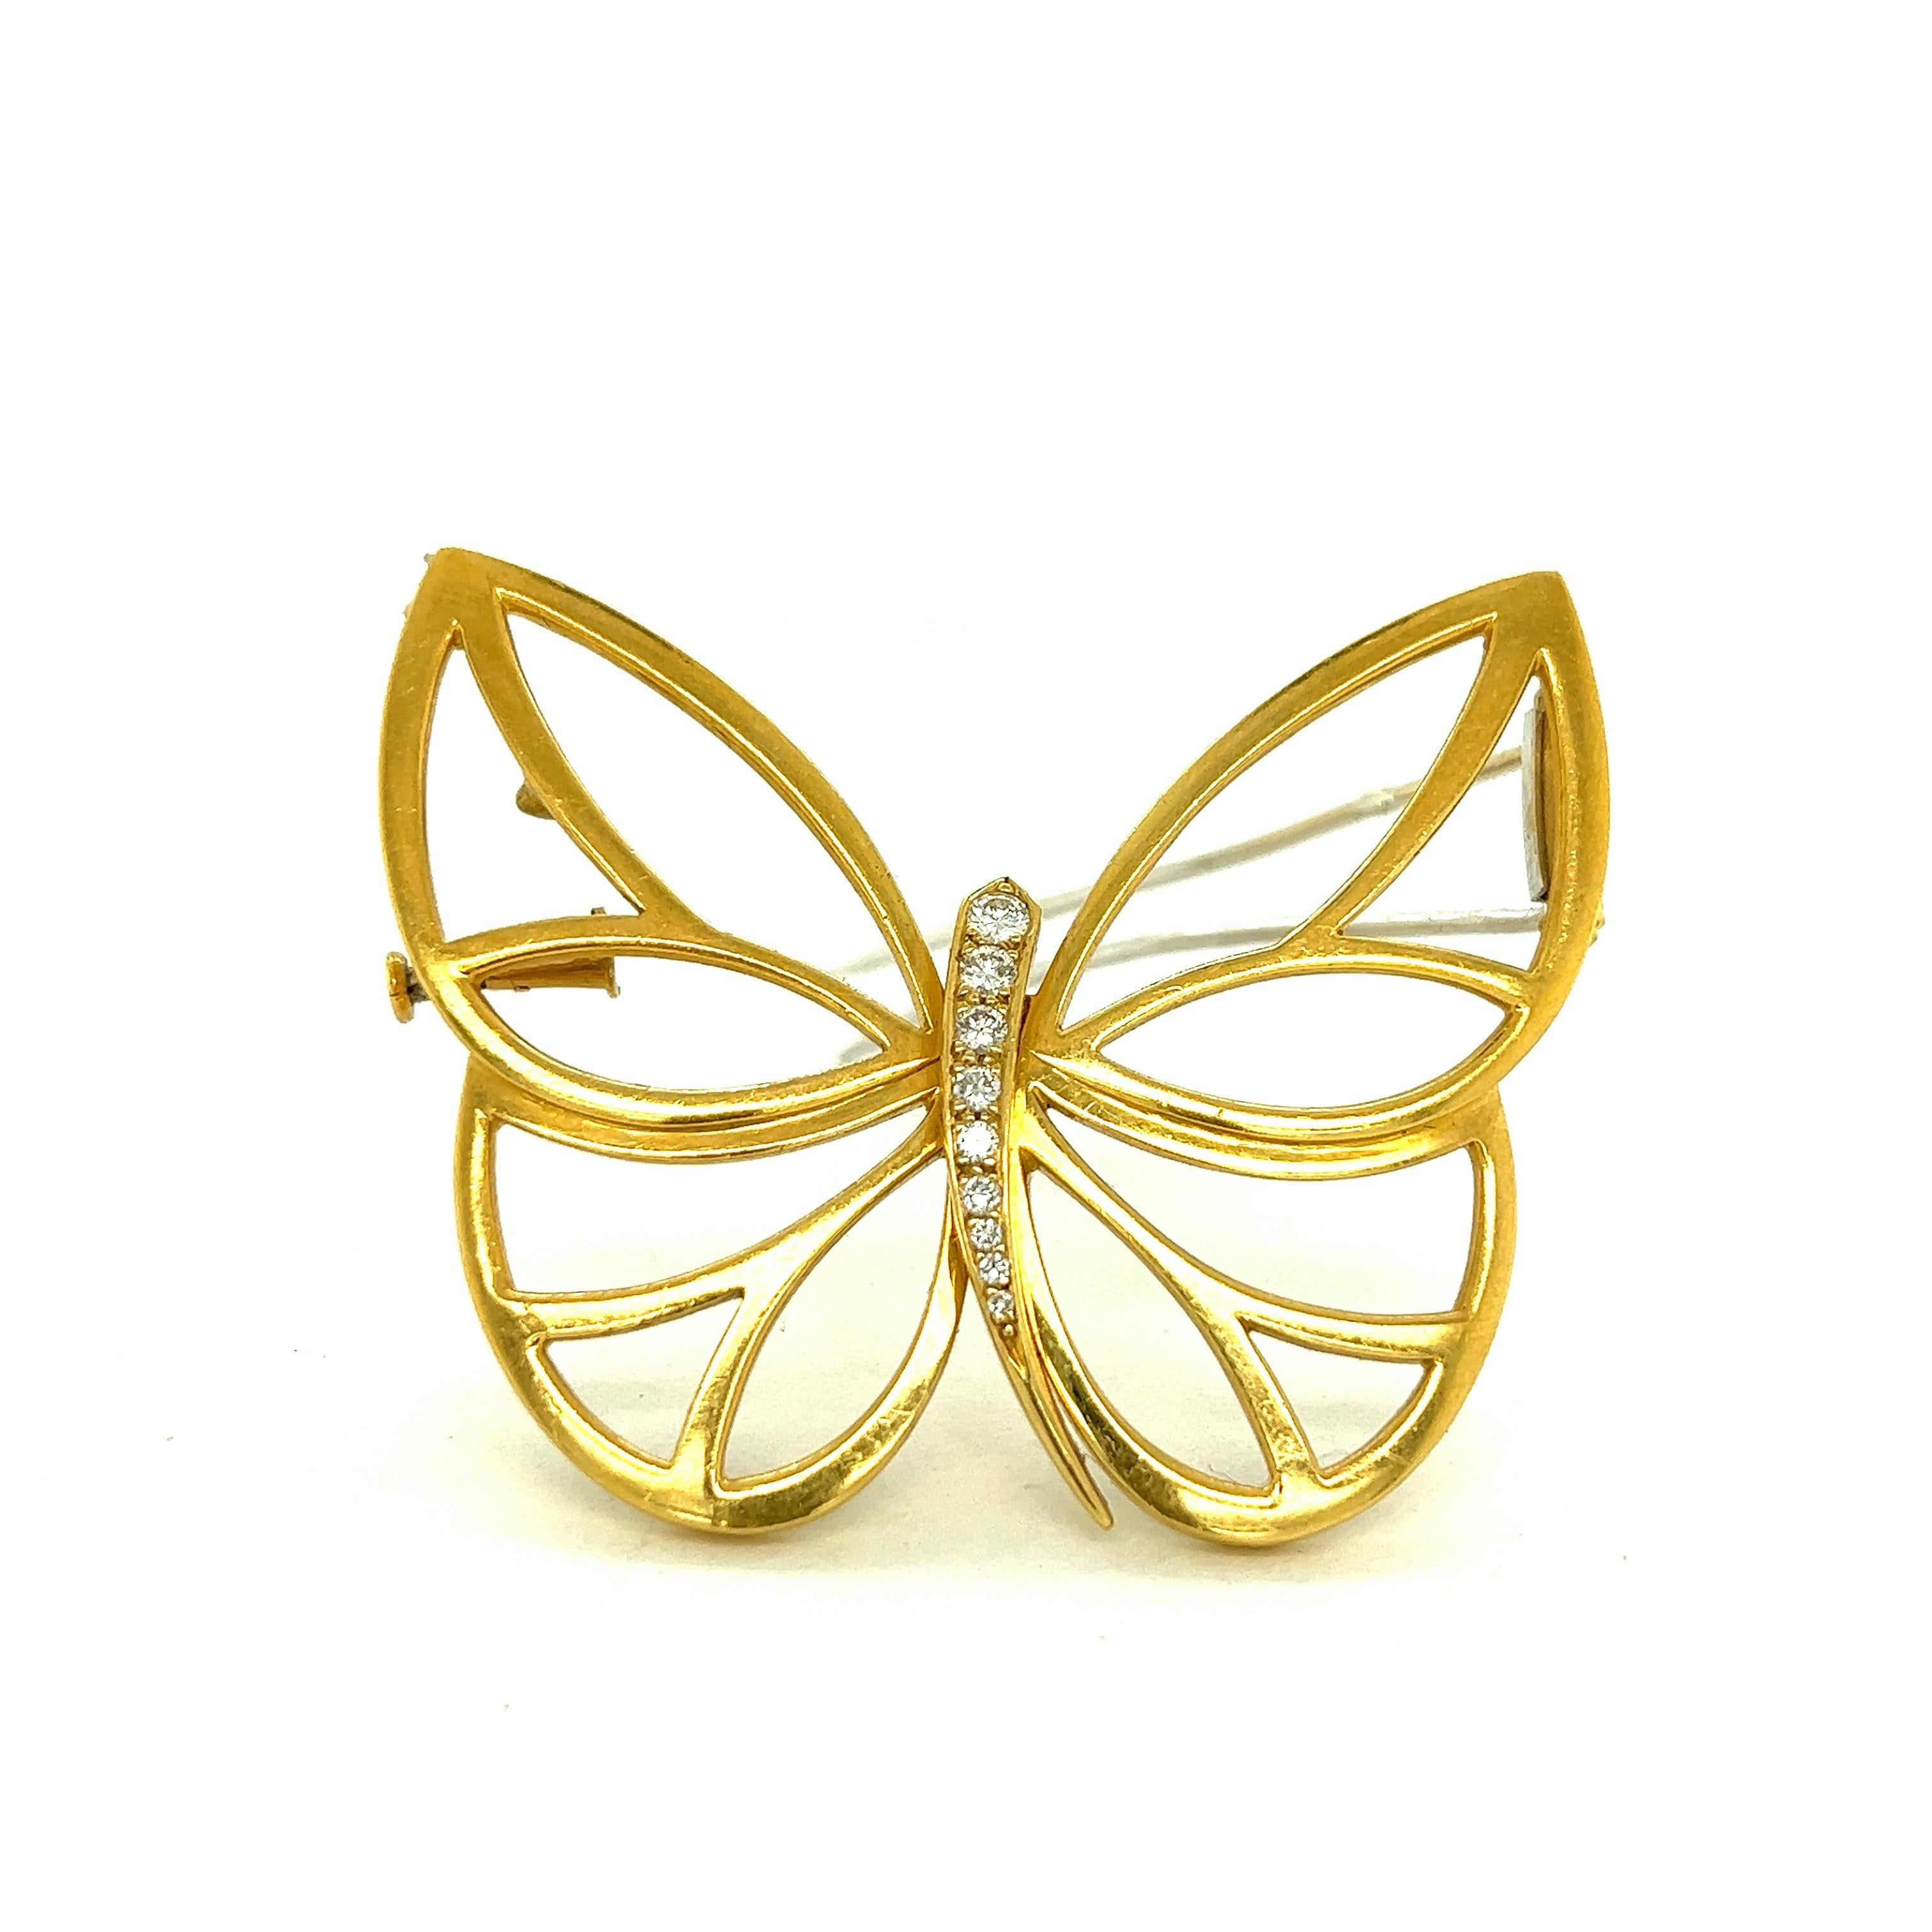 Van Cleef & Arpels Papillon Schmetterlingsbrosche aus 18 Karat Gelbgold mit Diamanten

Durchbrochenes Schmetterlingsdesign mit runden Diamanten im Brillantschliff von insgesamt ca. 0,30 Karat, aus 18 Karat Gelbgold; markiert VCA, 750, CL10527,